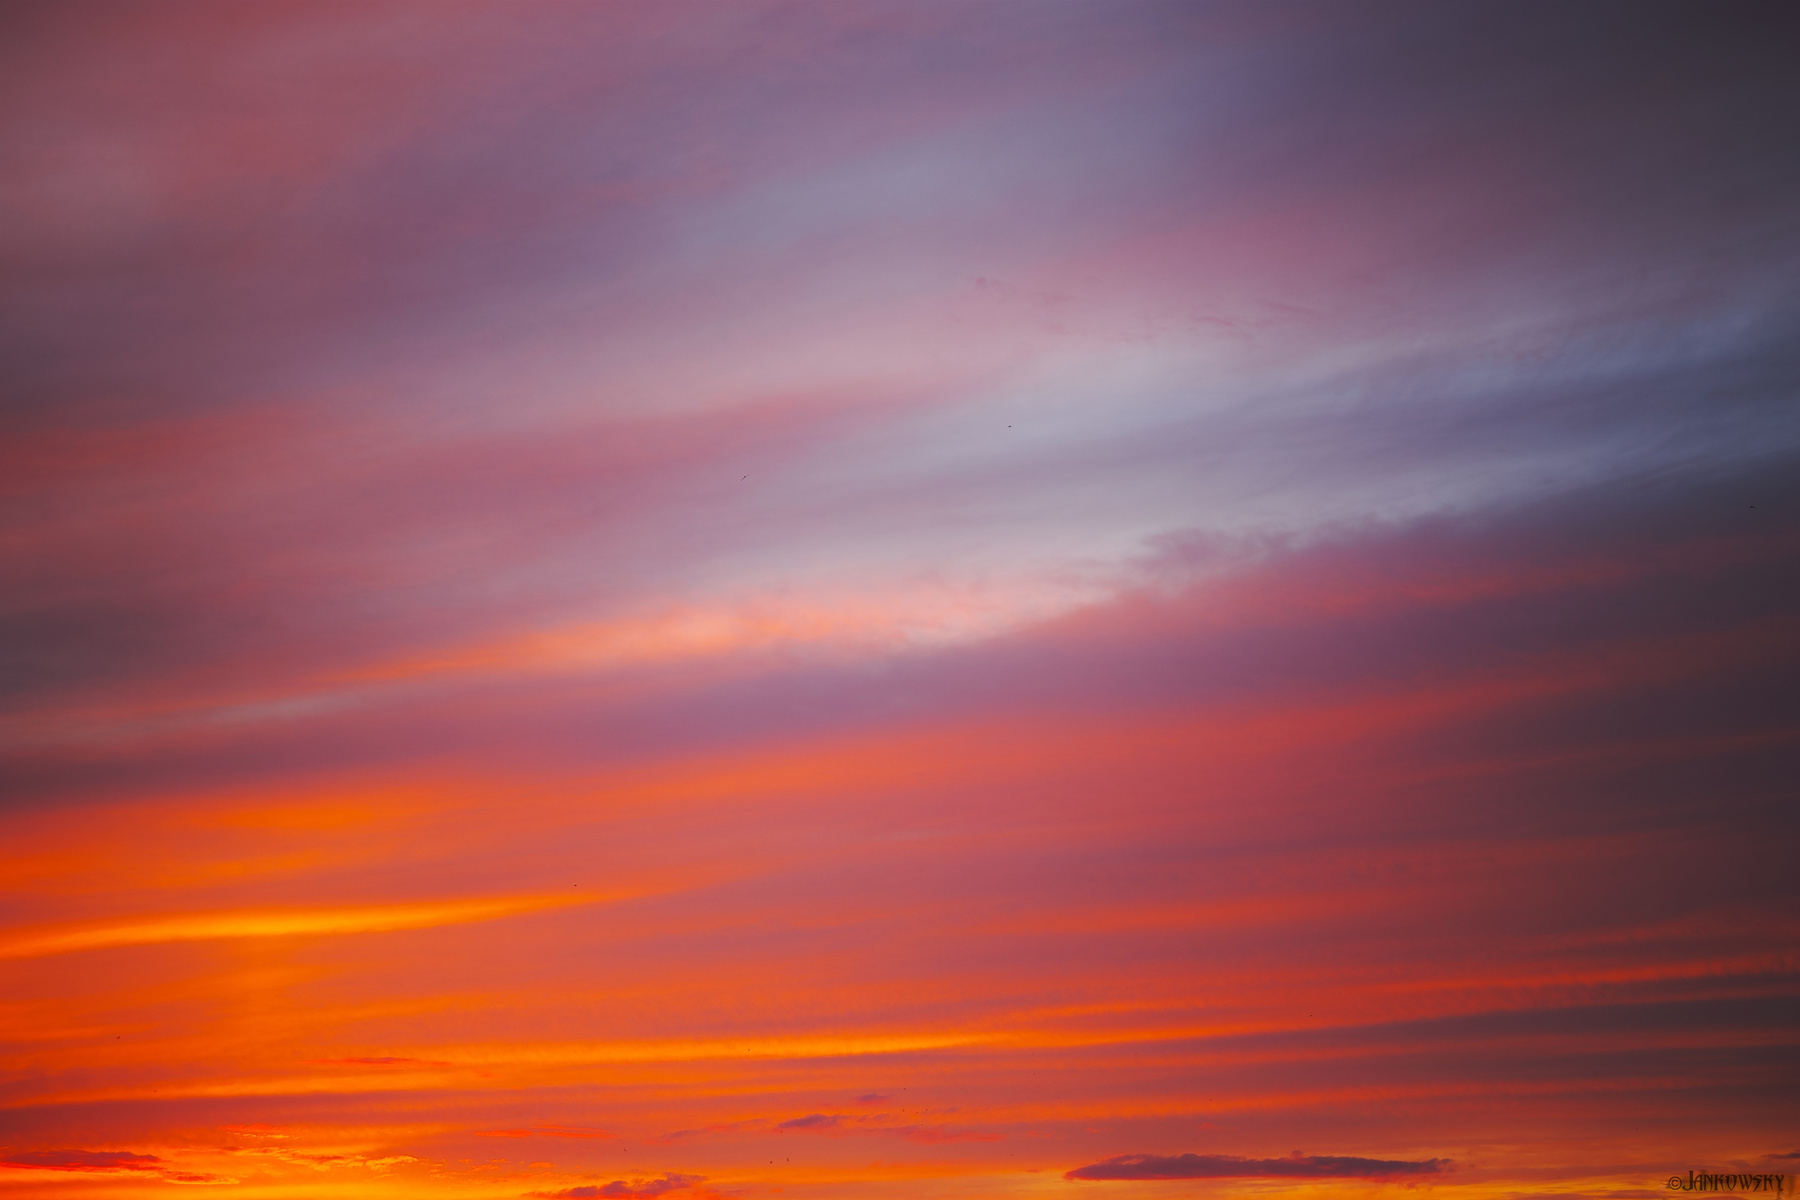 Foveon-безумие омского неба 10.06.21 Sigma DP3 Quattro Foveon цветопередача градиент омск небо закатное краски все оттенки розовый оранжевый